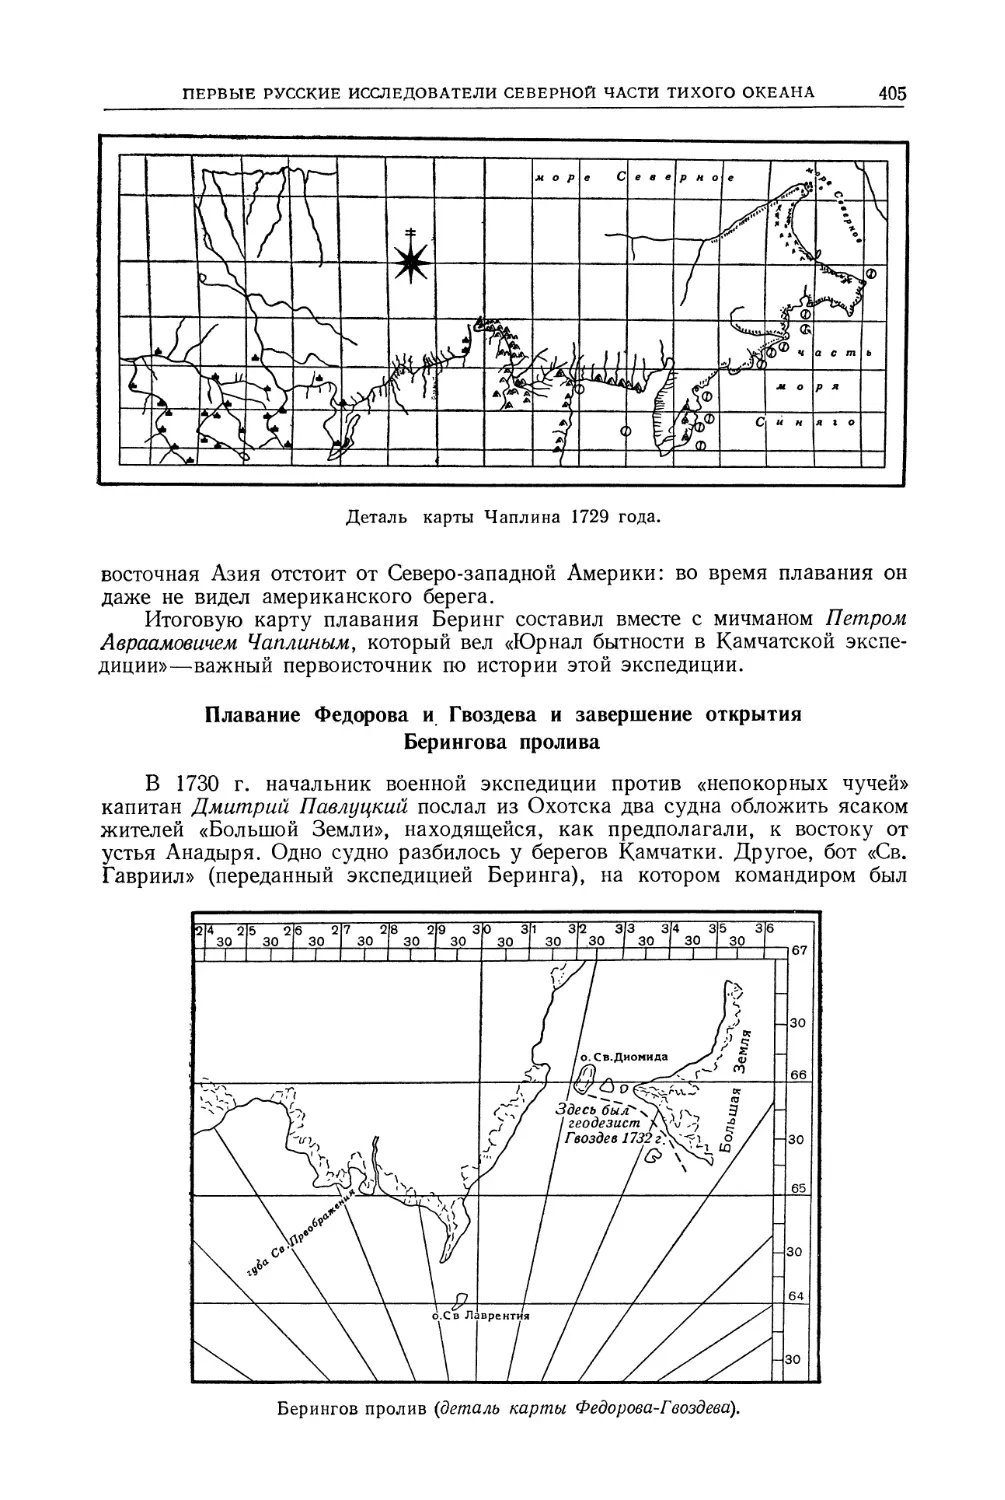 Плавание Федорова и Гвоздева и завершение открытия Берингова пролива